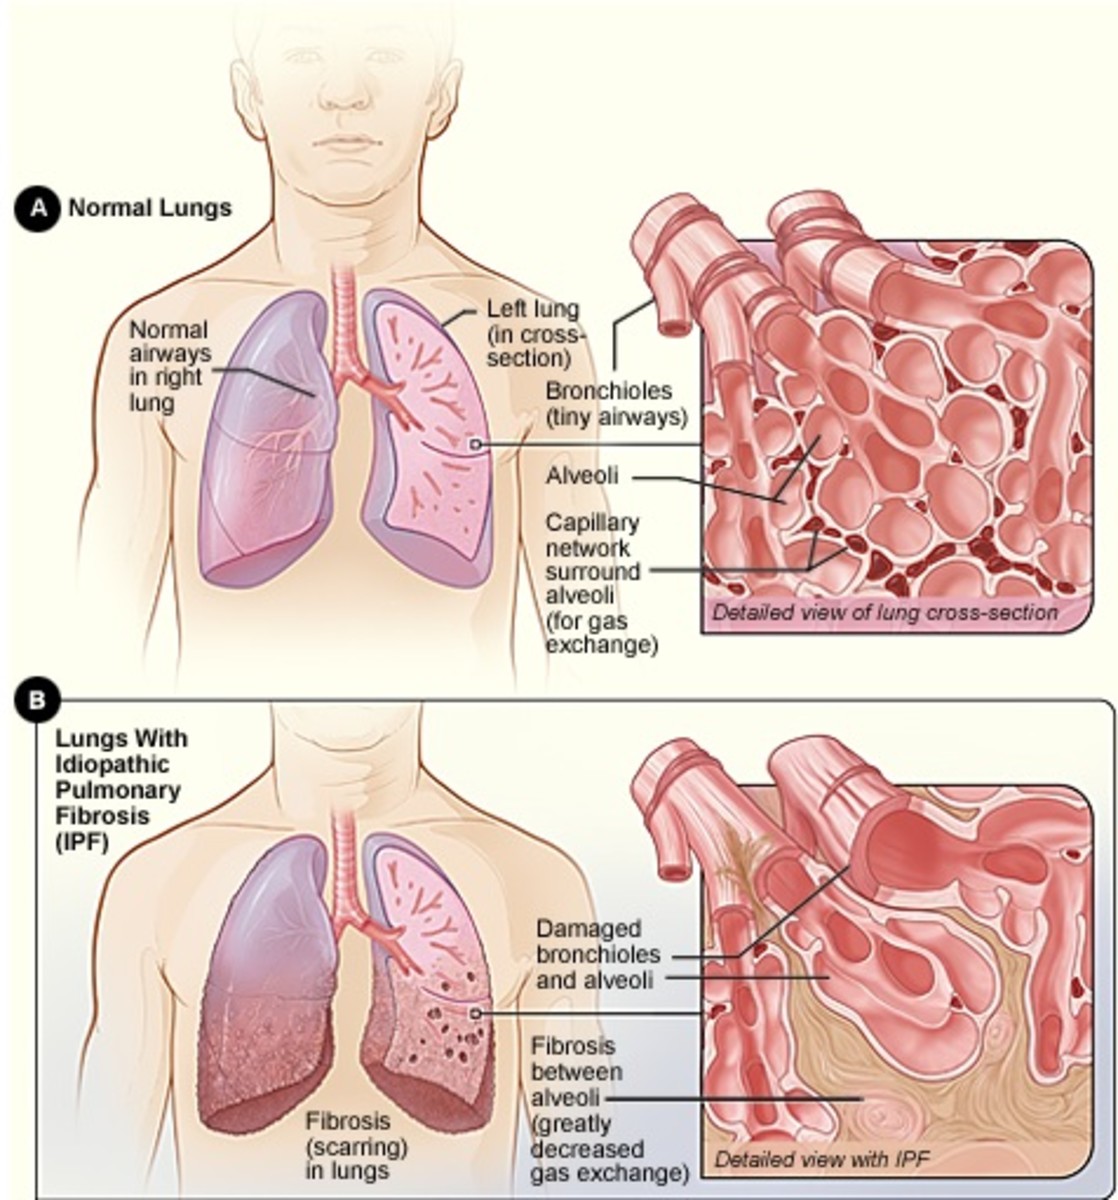 5 Alternate Ways to Treat Pulmonary Fibrosis